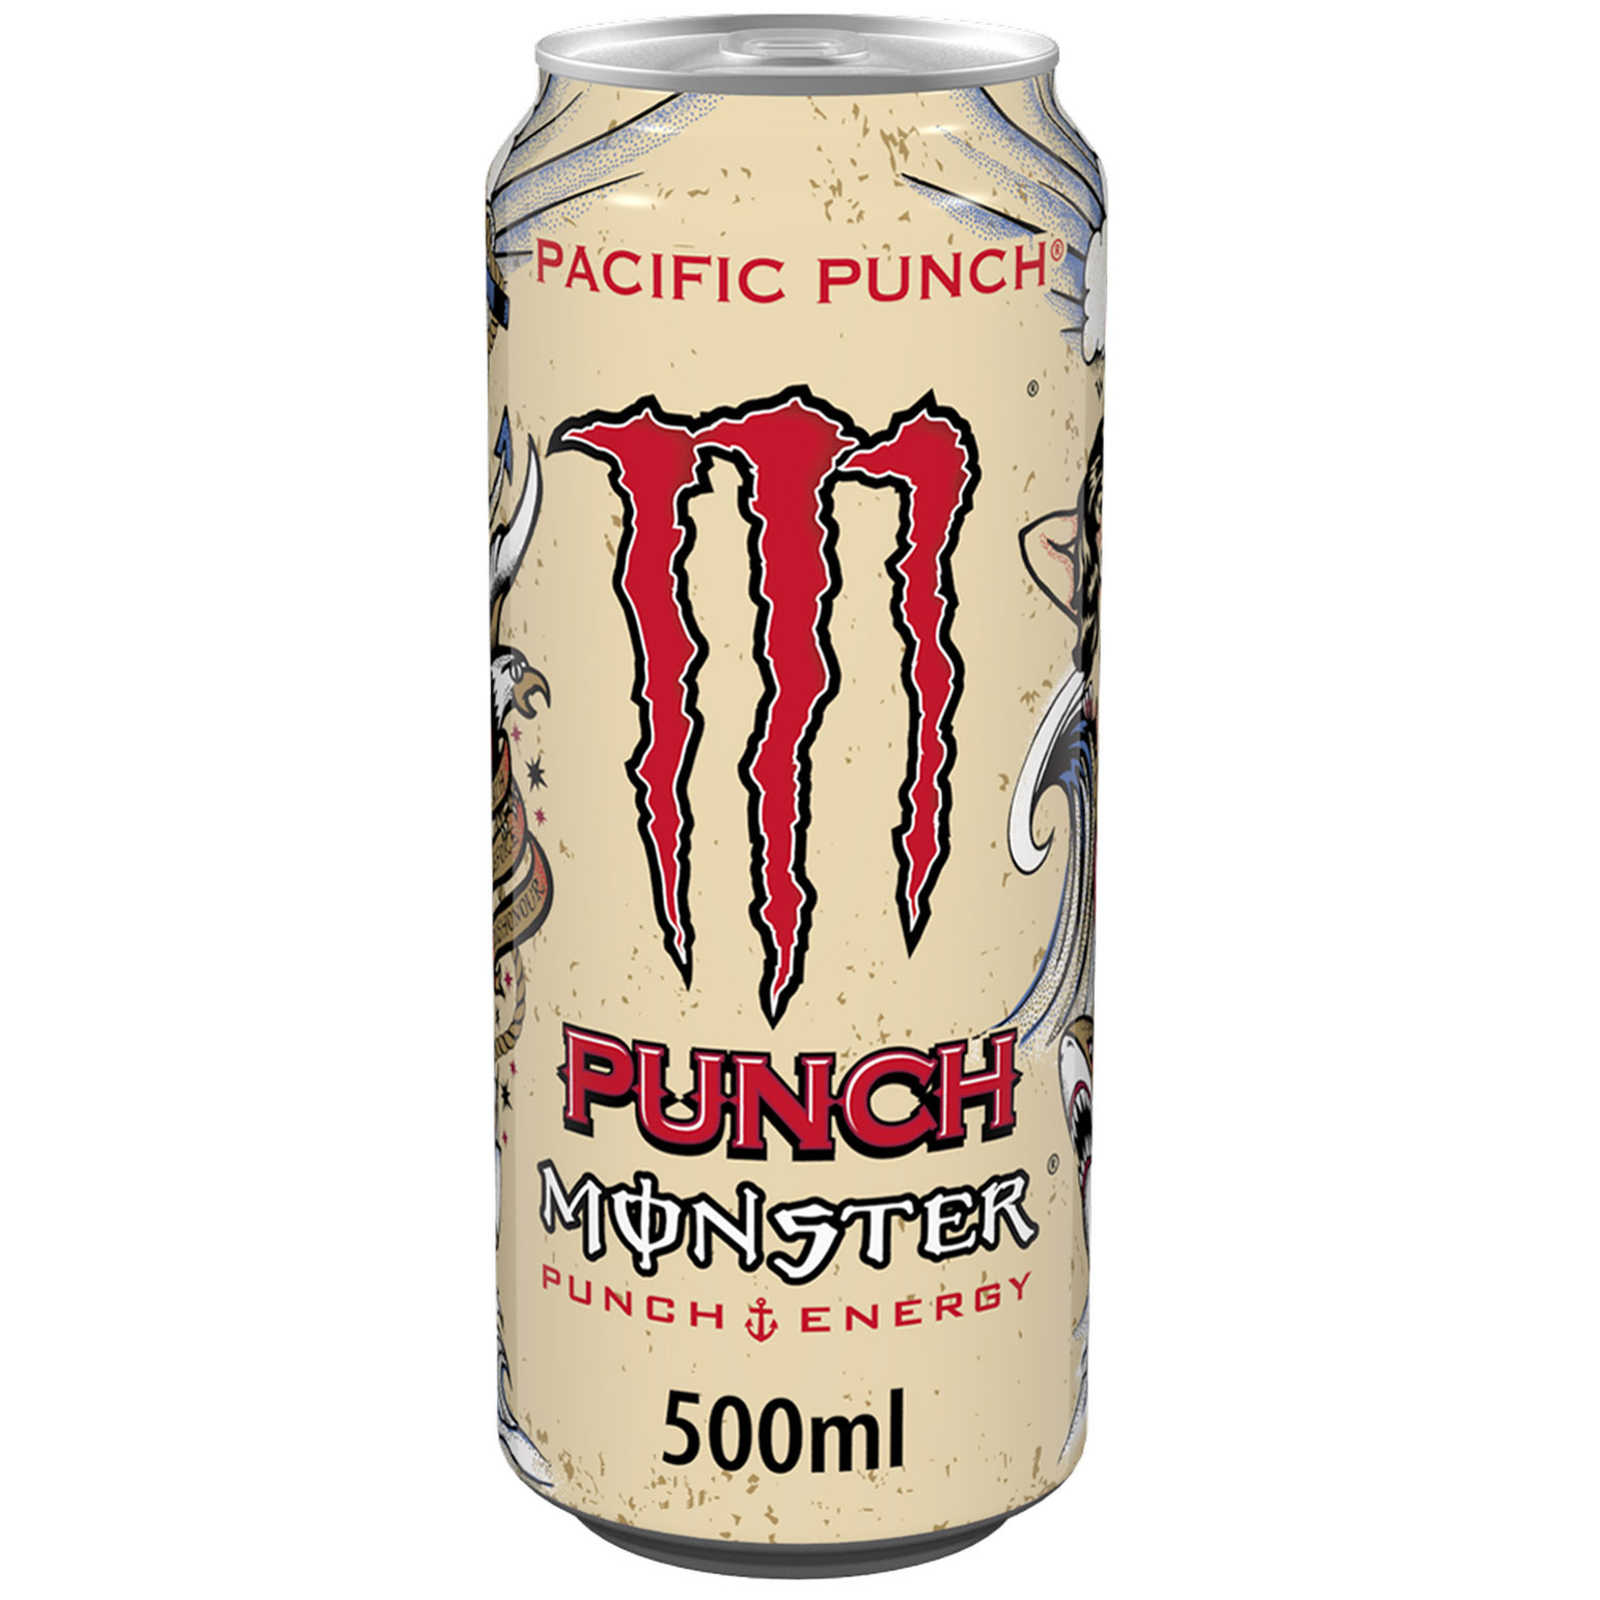 Monster-Energy